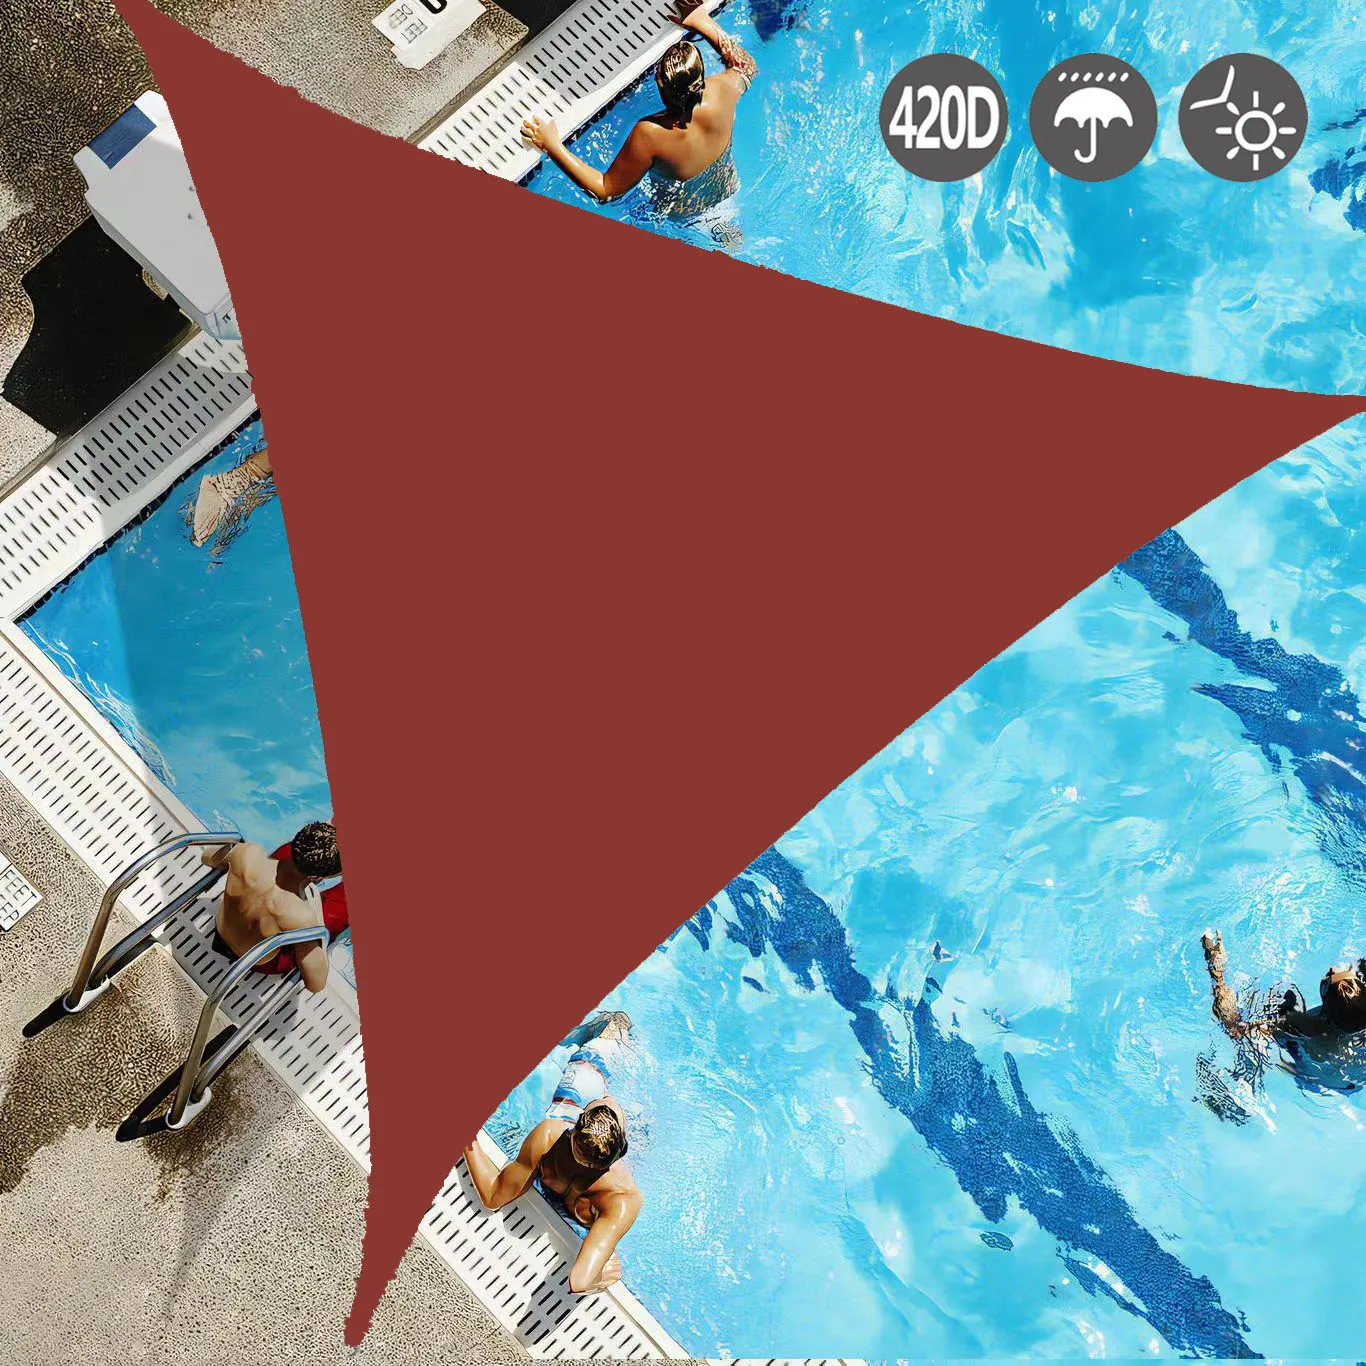 

Солнцезащитный парус, 2x2 водонепроницаемый внешний Фотофон, 95% УФ-защищенный треугольный навес для двора, защита для бассейна внутреннего дворика